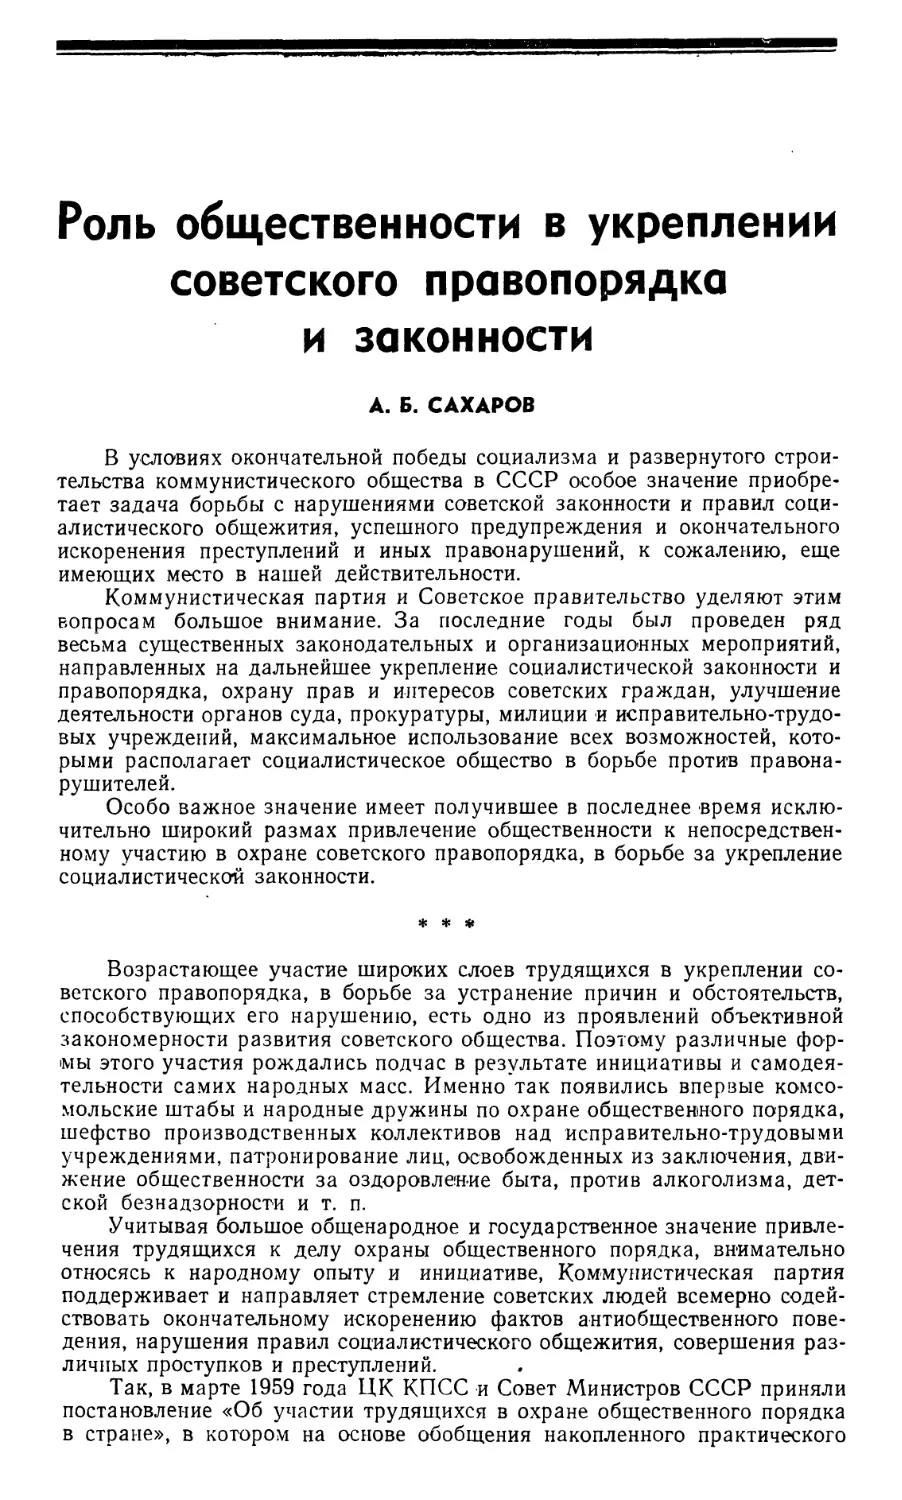 Сахаров А.Б. Роль общественности в укреплении советского правопорядка и законности